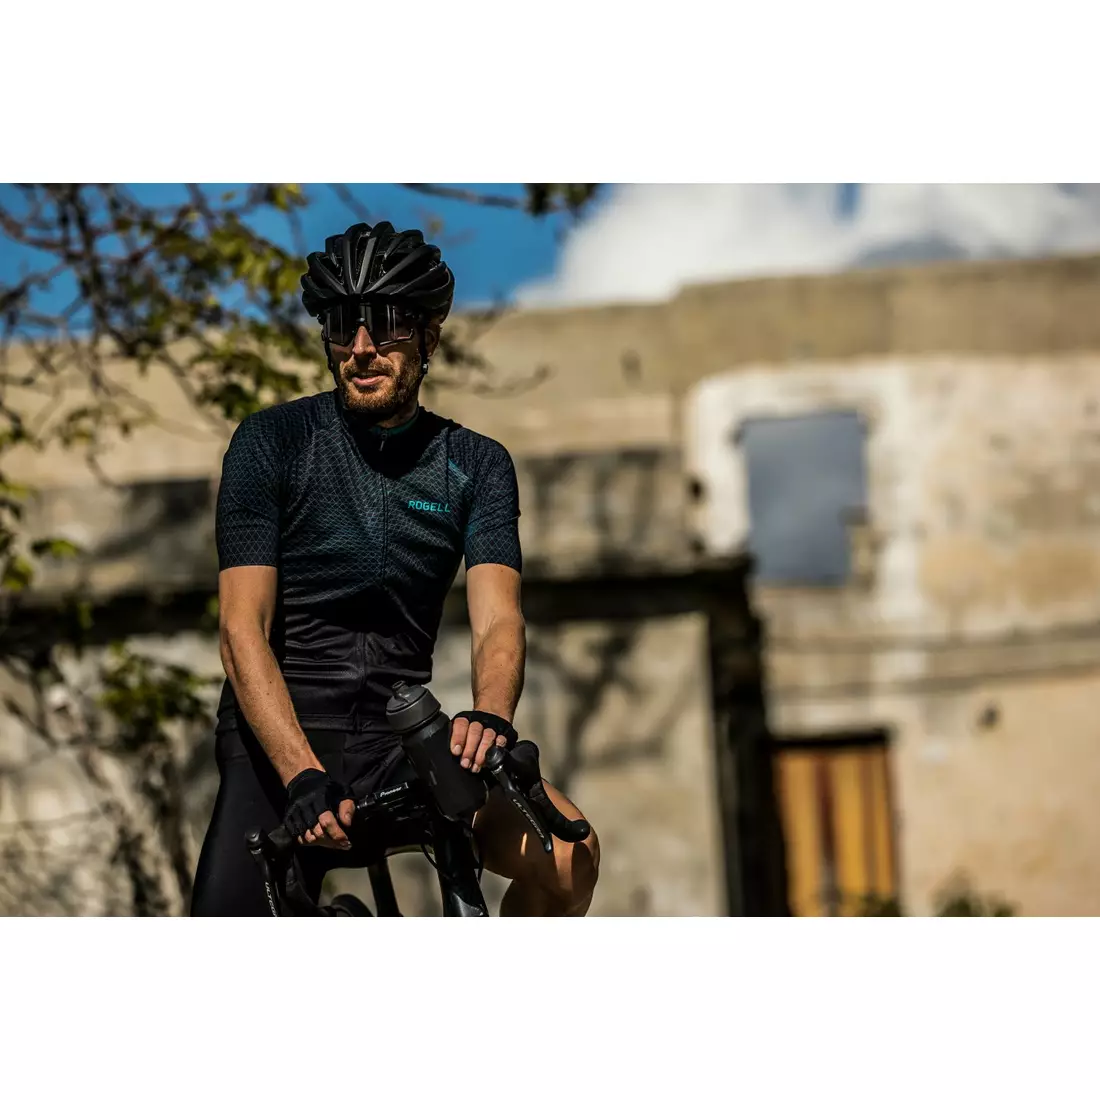 ROGELLI férfi kerékpáros póló WEAVE black/green 001.331